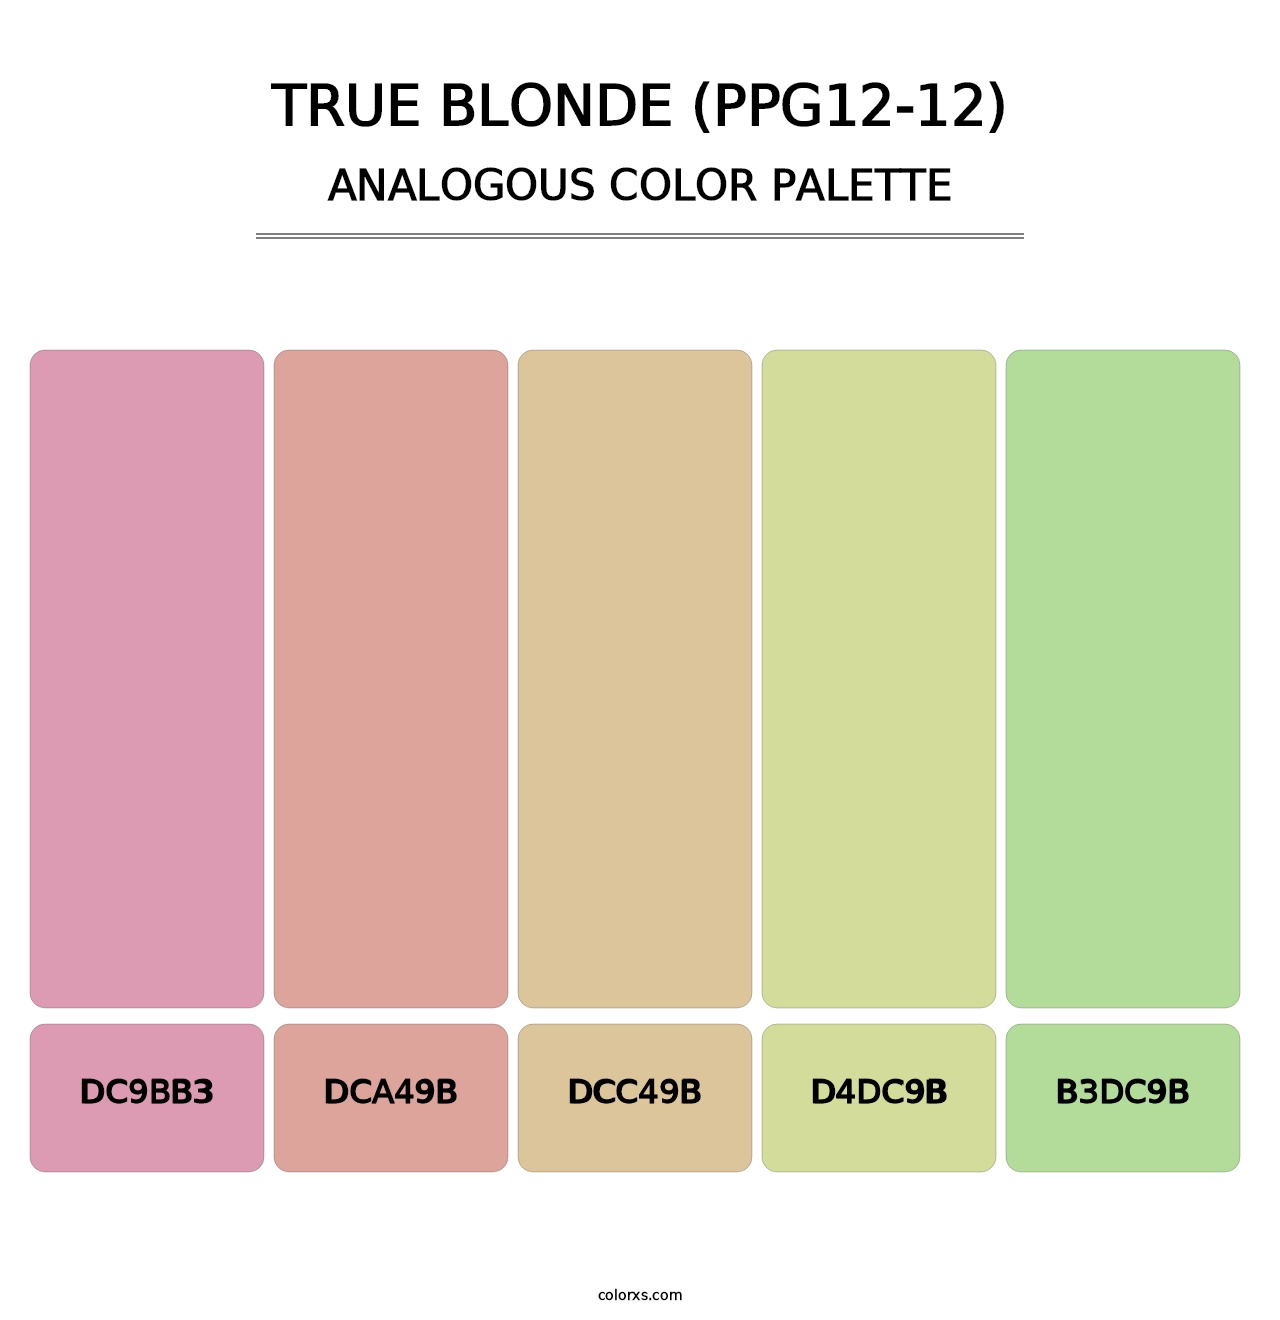 True Blonde (PPG12-12) - Analogous Color Palette